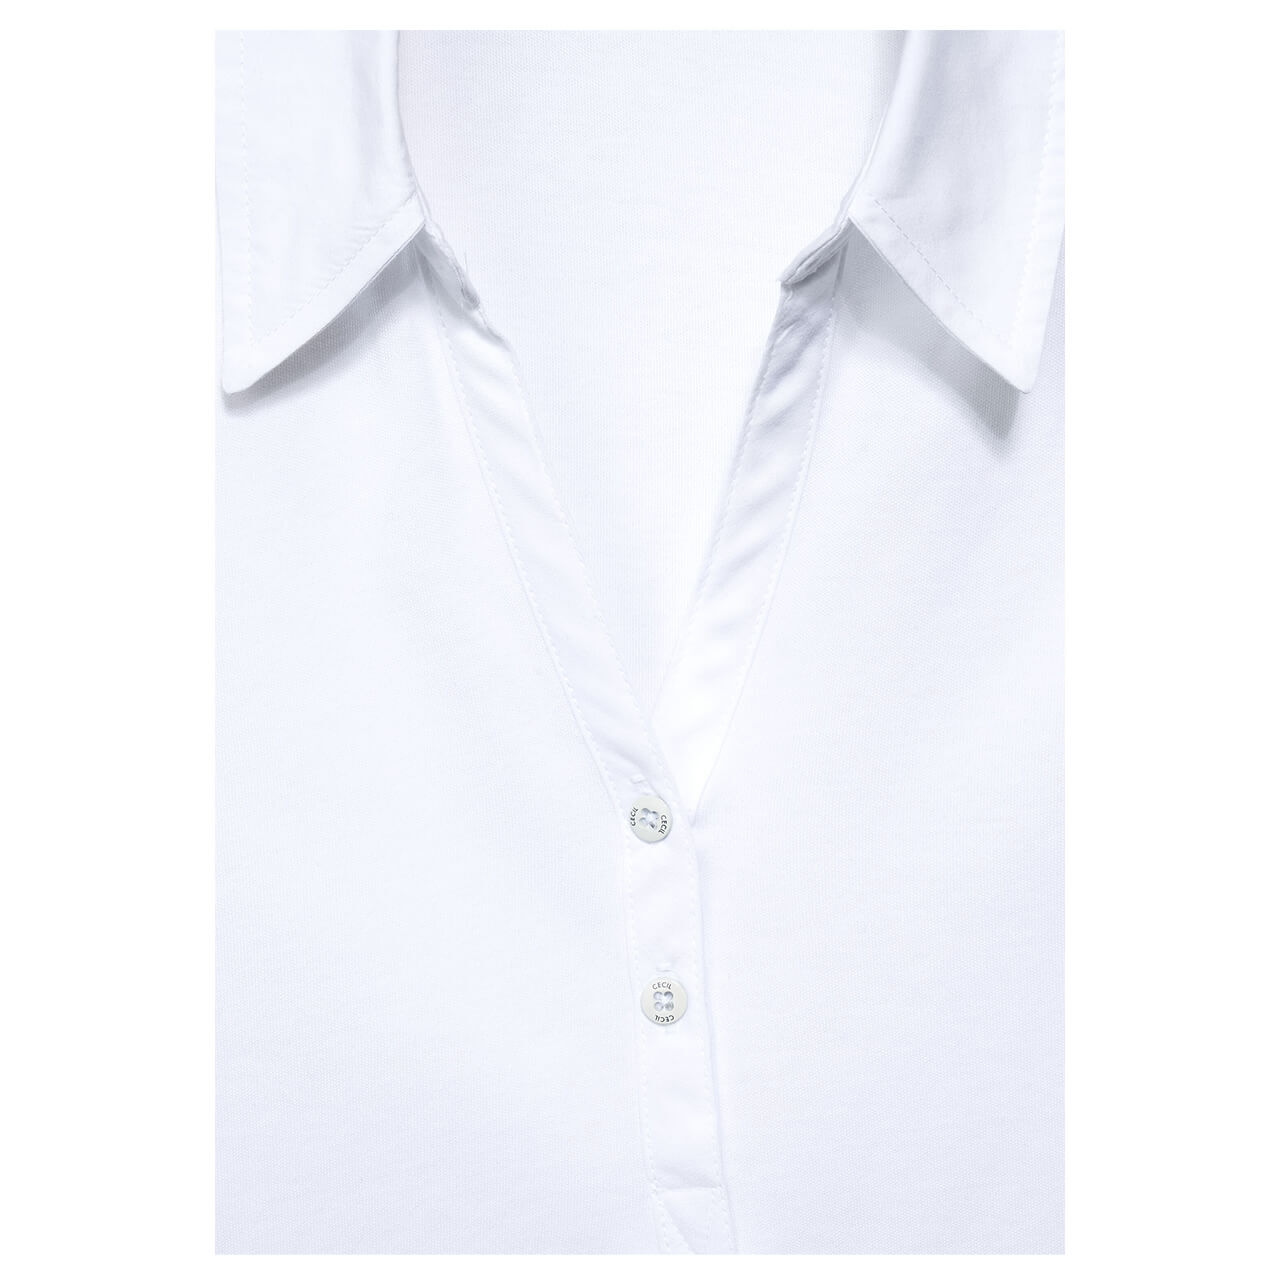 Cecil Poloshirt für Damen in Weiß, FarbNr.: 10000